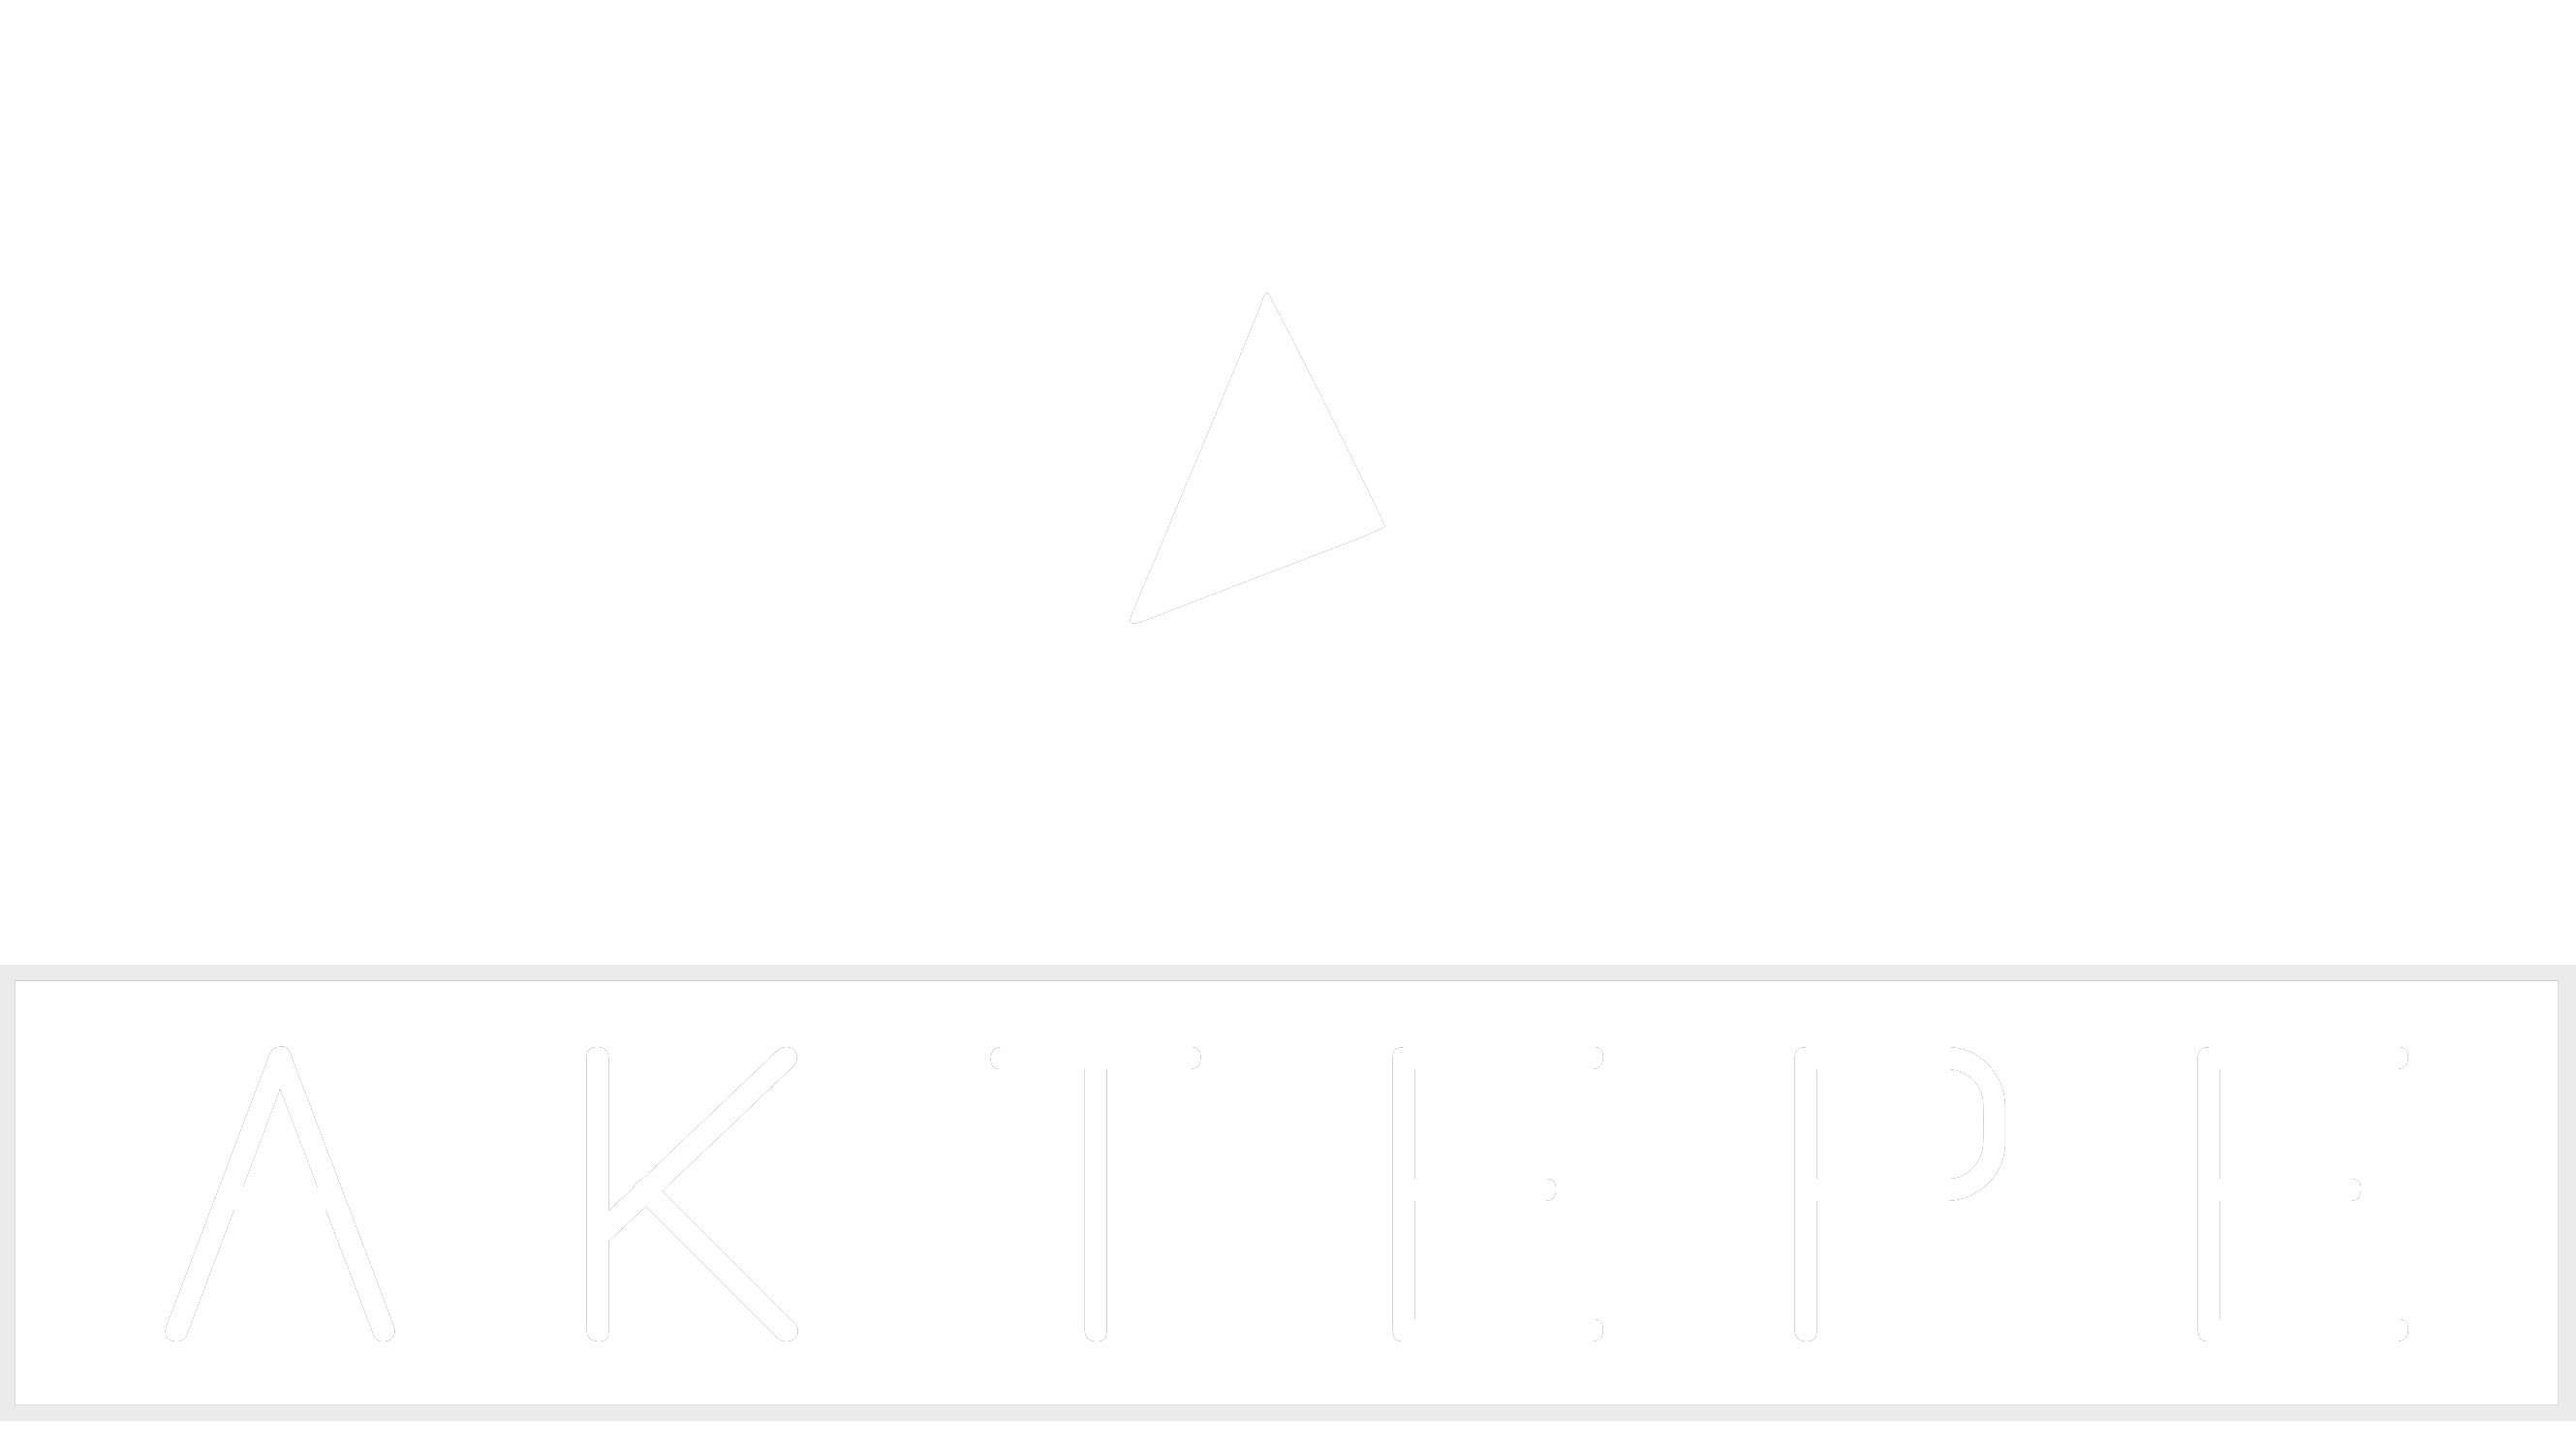 Fabia - Aktepe Shop - Oto Müzik Görüntü Navigasyon Sistemleri ve Teyp Çerçevesi Satış Merkezi